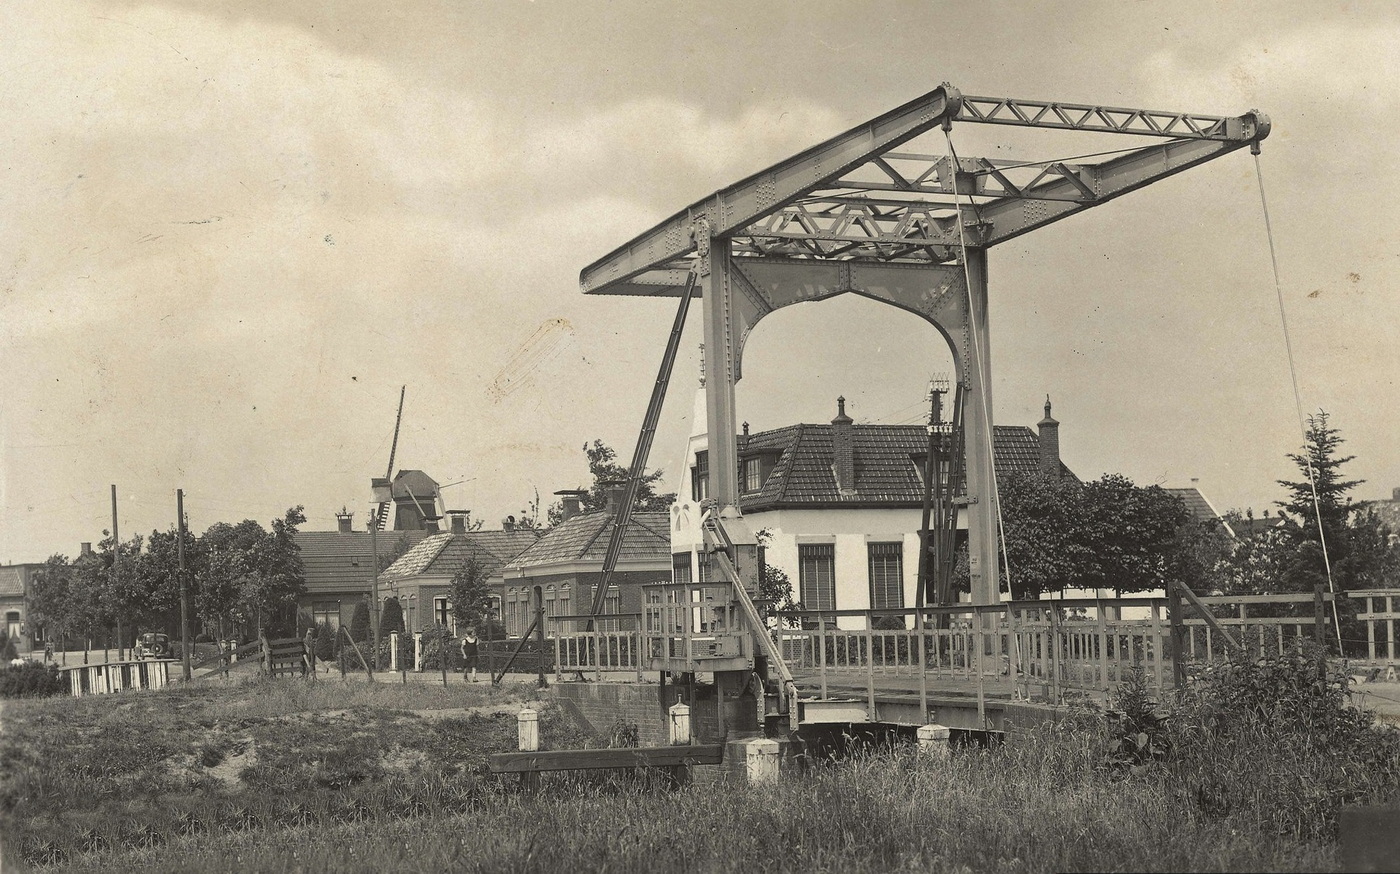 Ansichtkaart Dorpsgezicht Scharmer met ophaalbrug uit 1939. Bron: RHC GA, Groninger Archieven, Beeldbank Groningen.